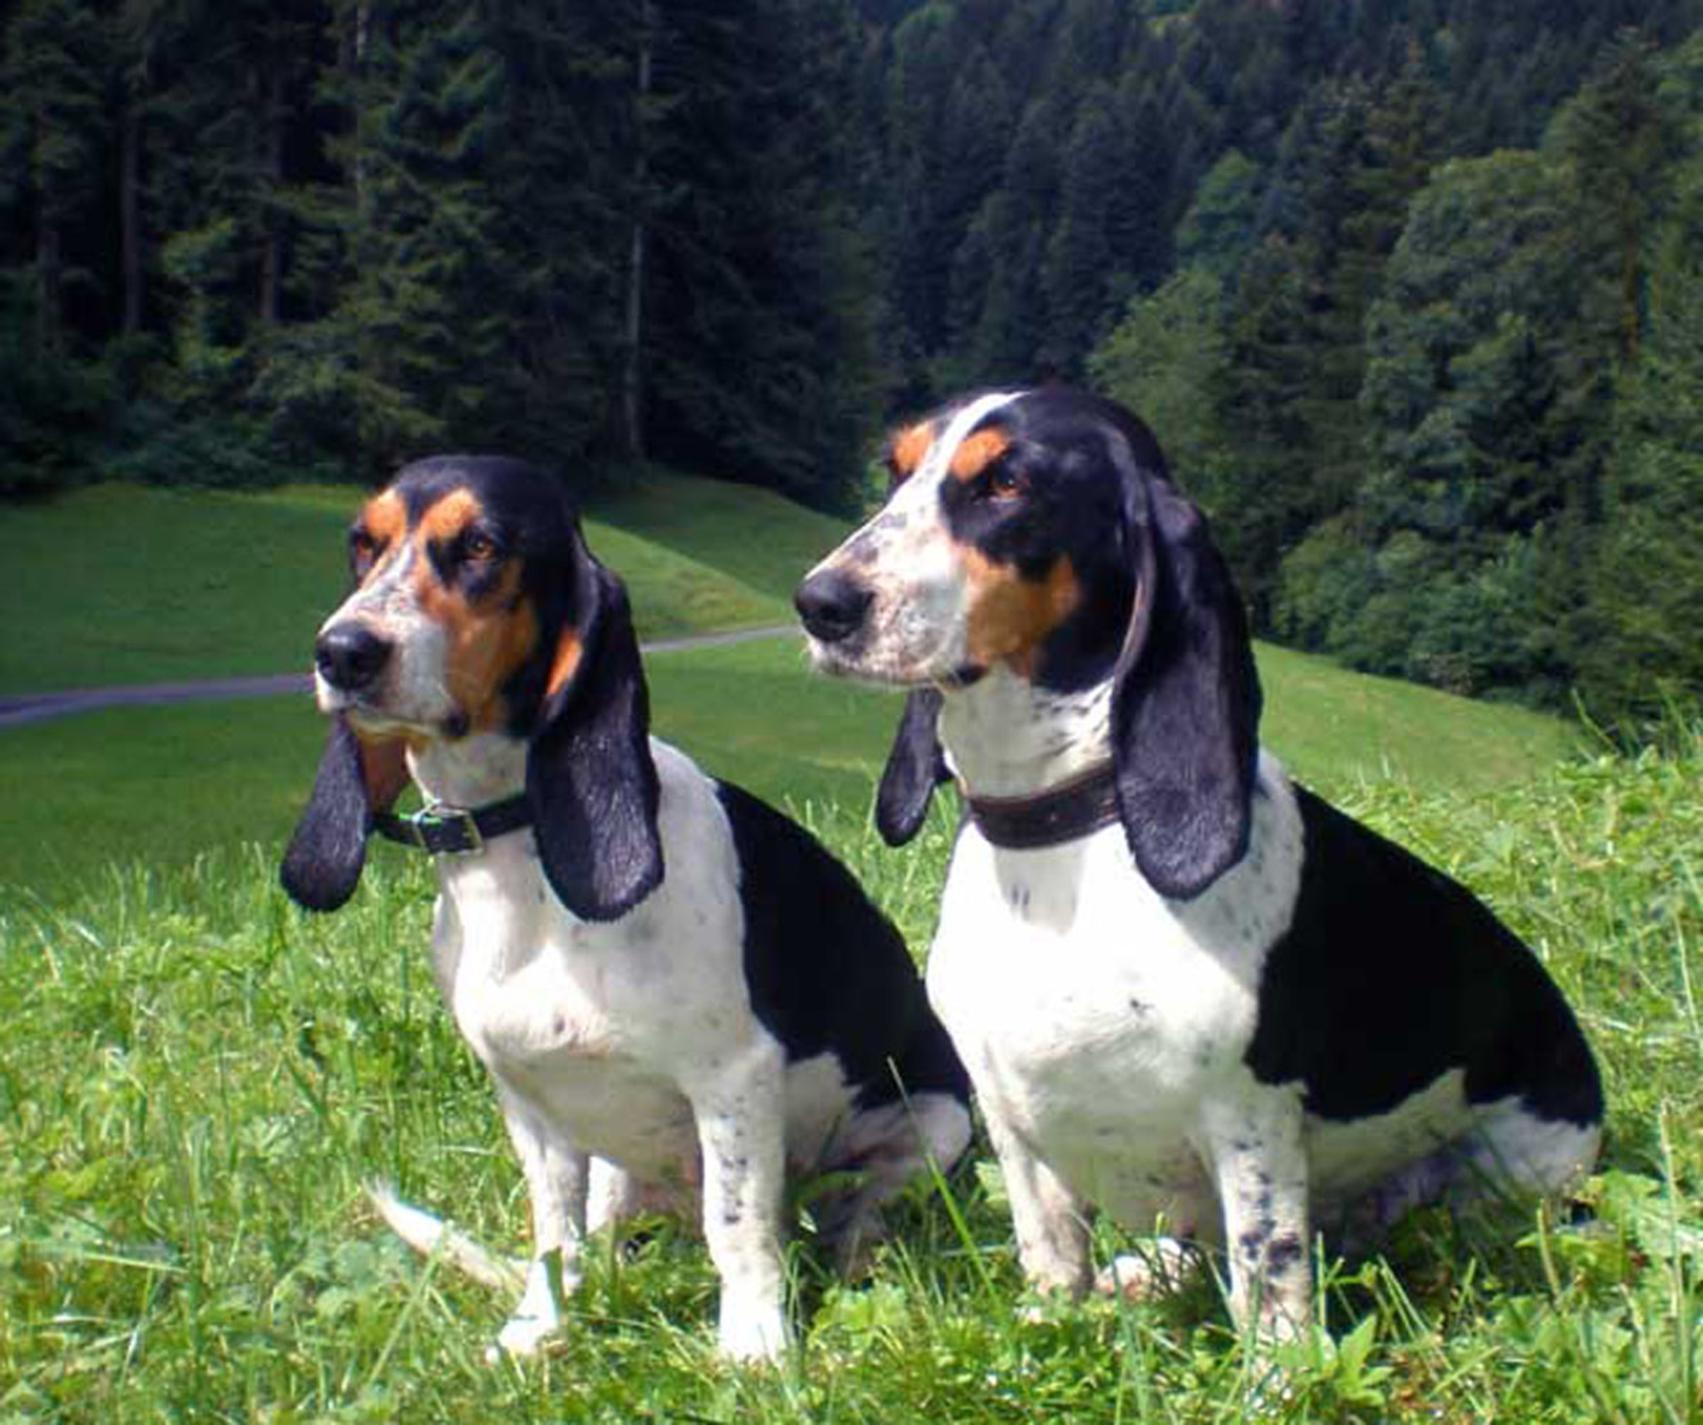 Schweizer Laufhund Dog: Schweizer Two Schweizer Laufhund Dogs Breed